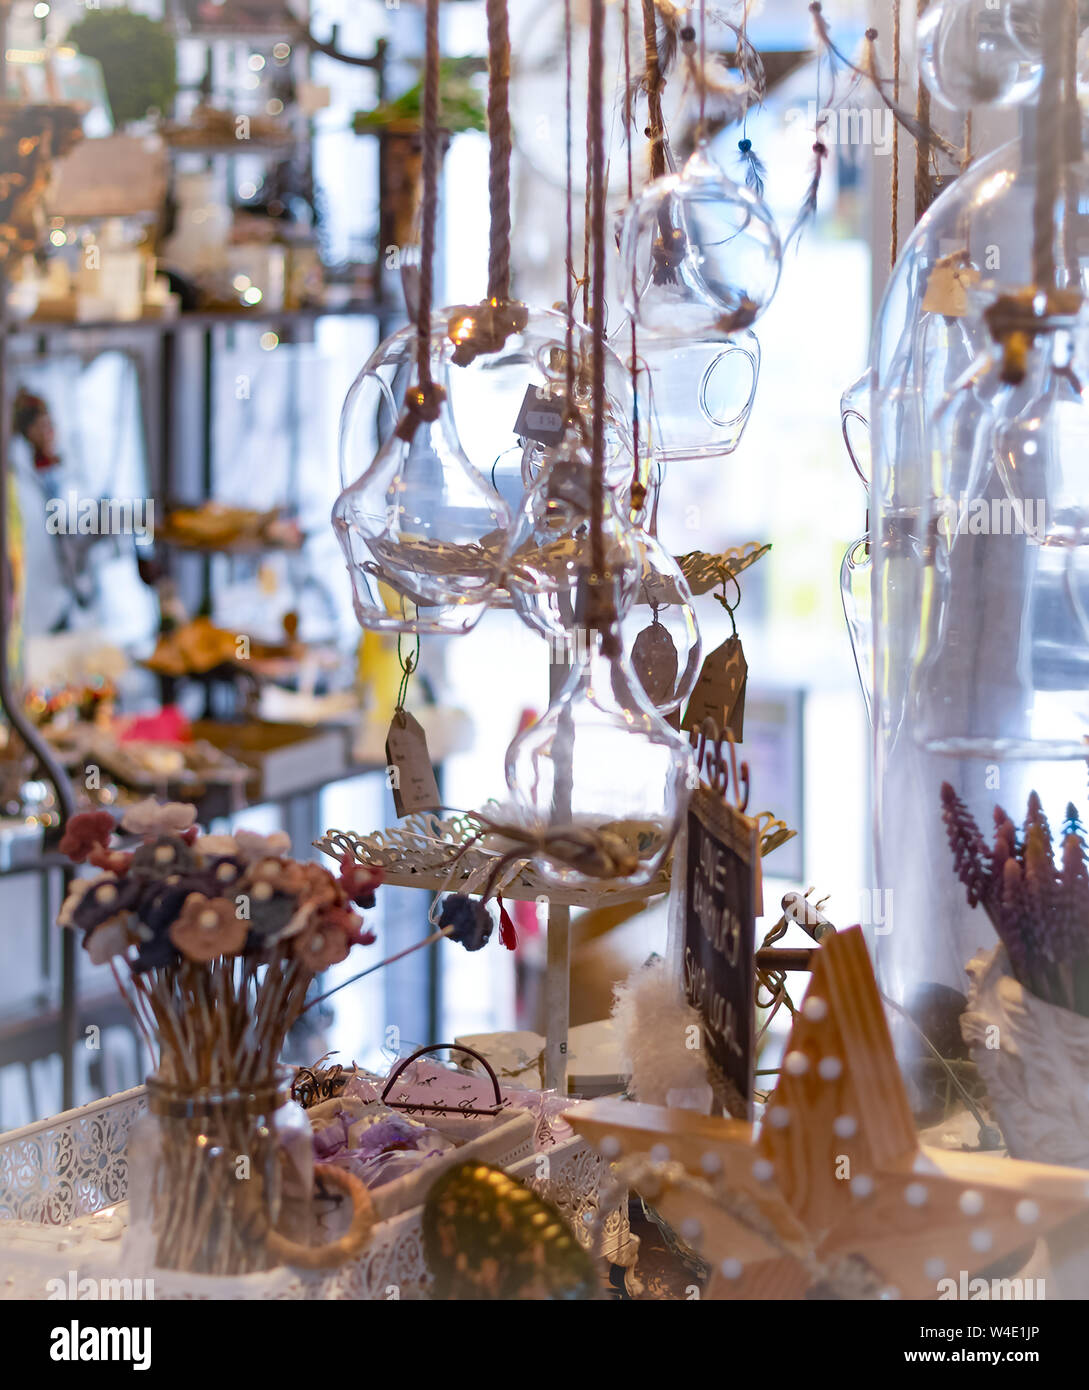 Verrerie et ornaments​ exposées dans un magasin indépendant désormais fermé, Banbury, Angleterre, Royaume-Uni. Les boutiques d'Indiens ont du mal à survivre dans de nombreux domaines. Banque D'Images